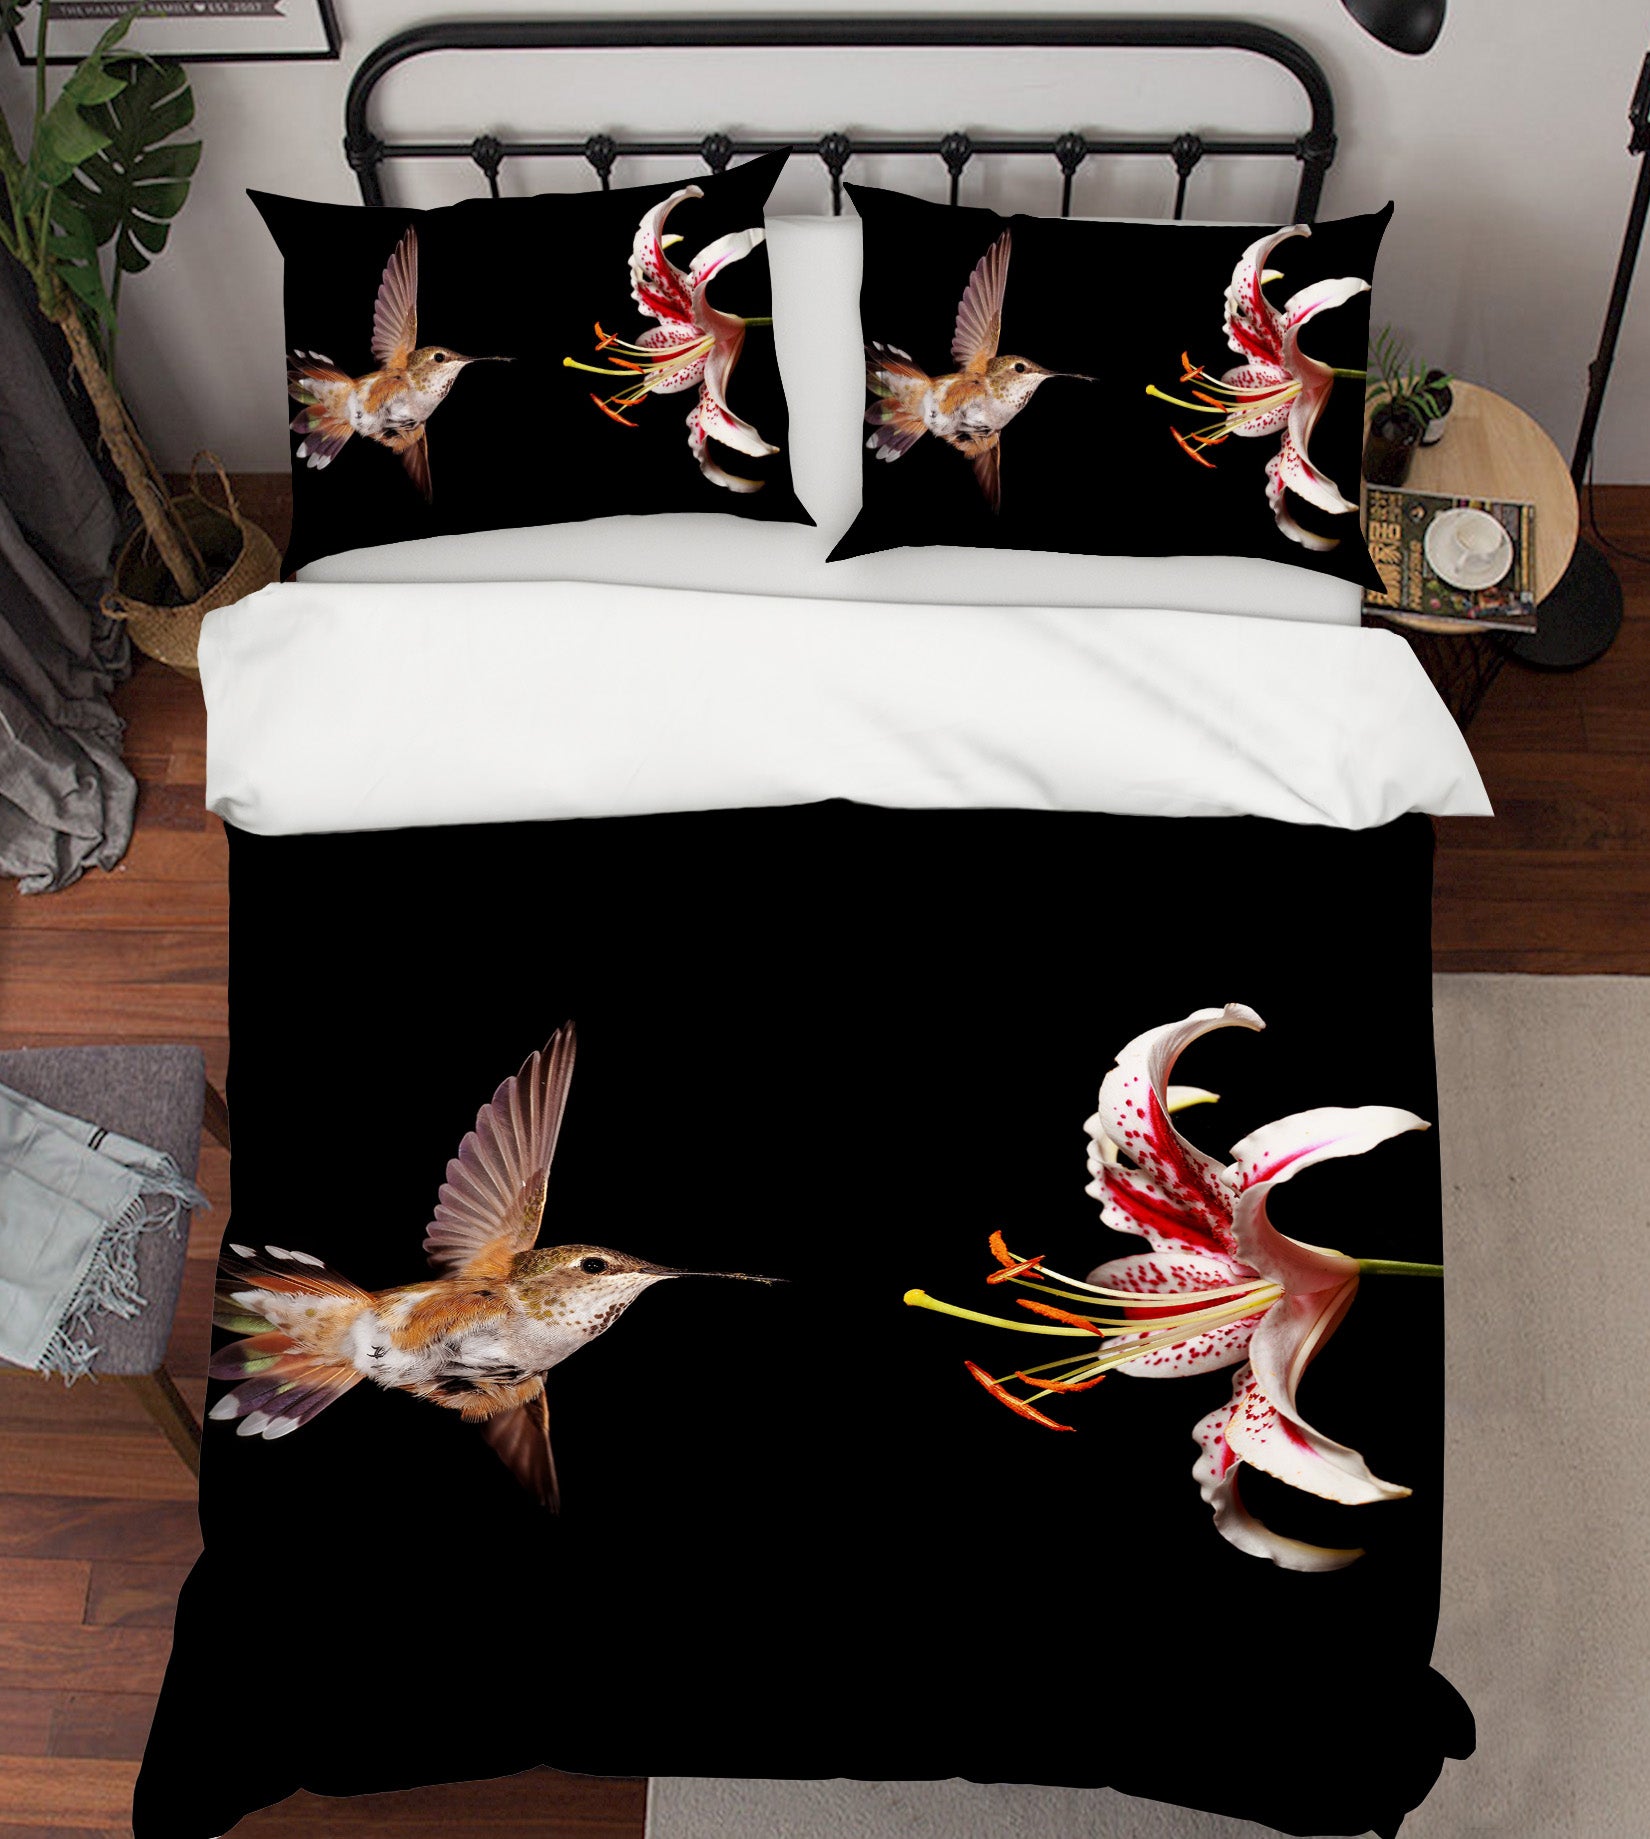 3D Bird Flowers 19229 Bed Pillowcases Quilt